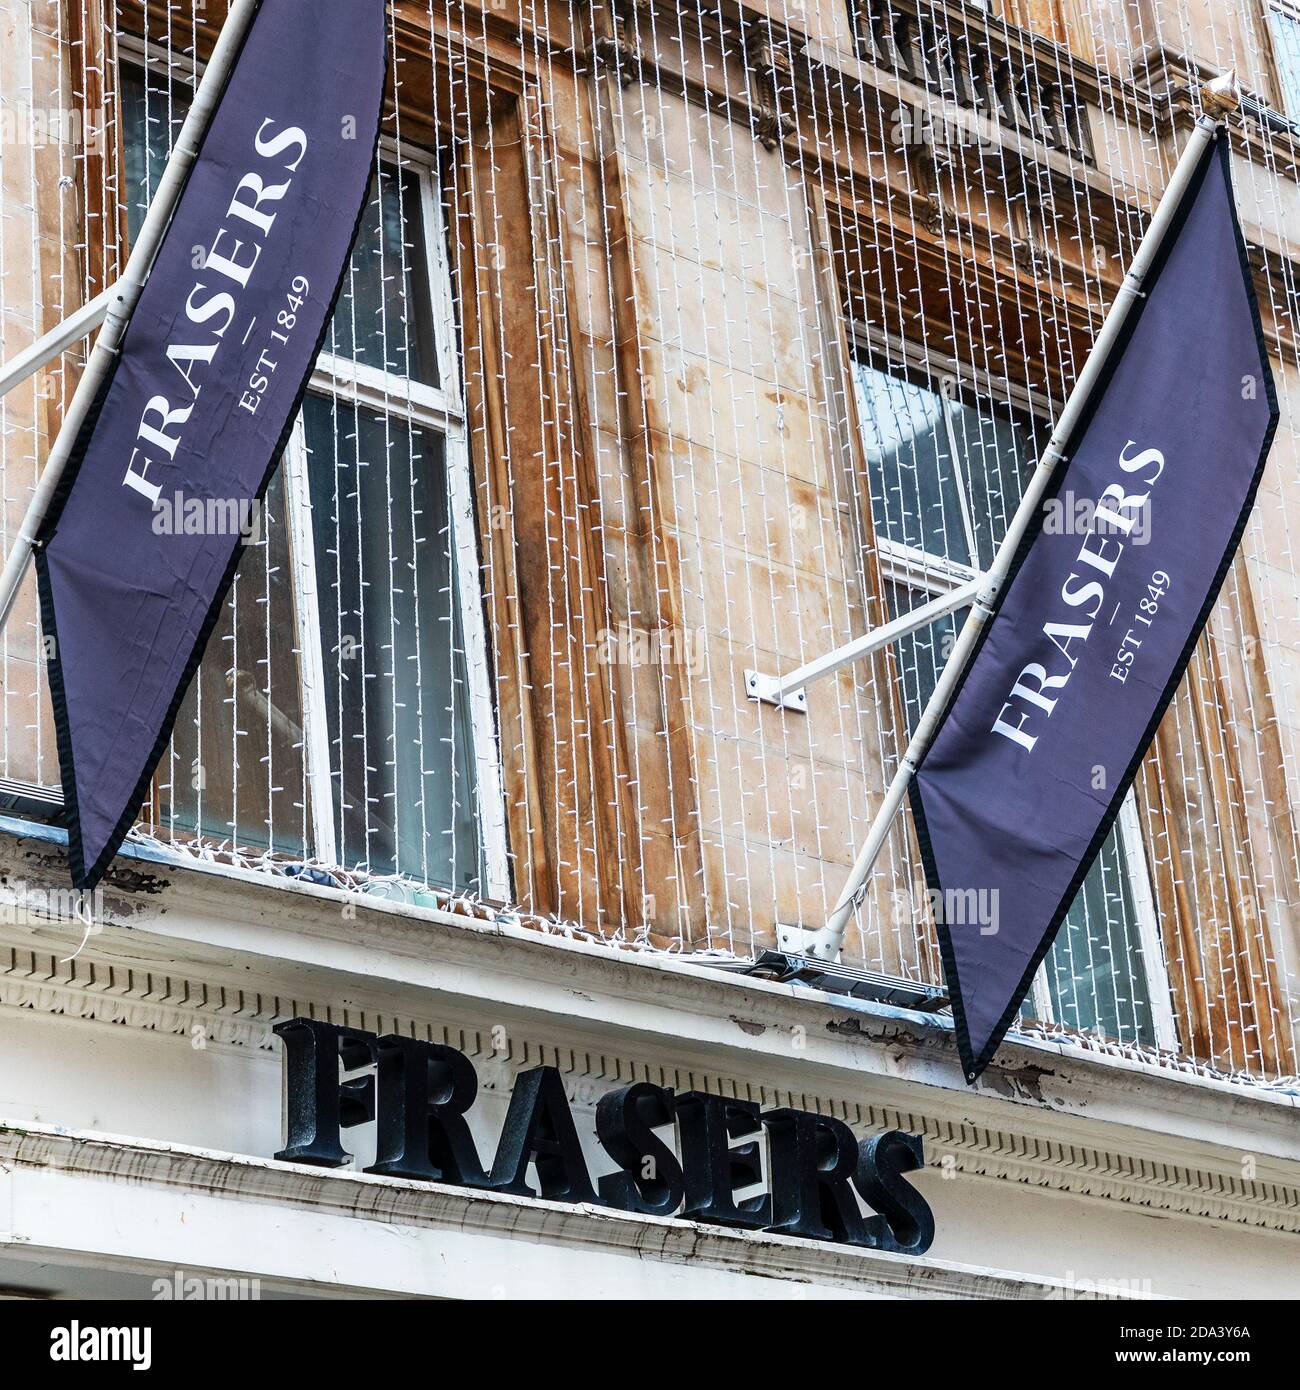 Panneau Shop pour le grand détaillant Frasers, panneau devant le point de vente de Glasgow, Écosse, Royaume-Uni Banque D'Images